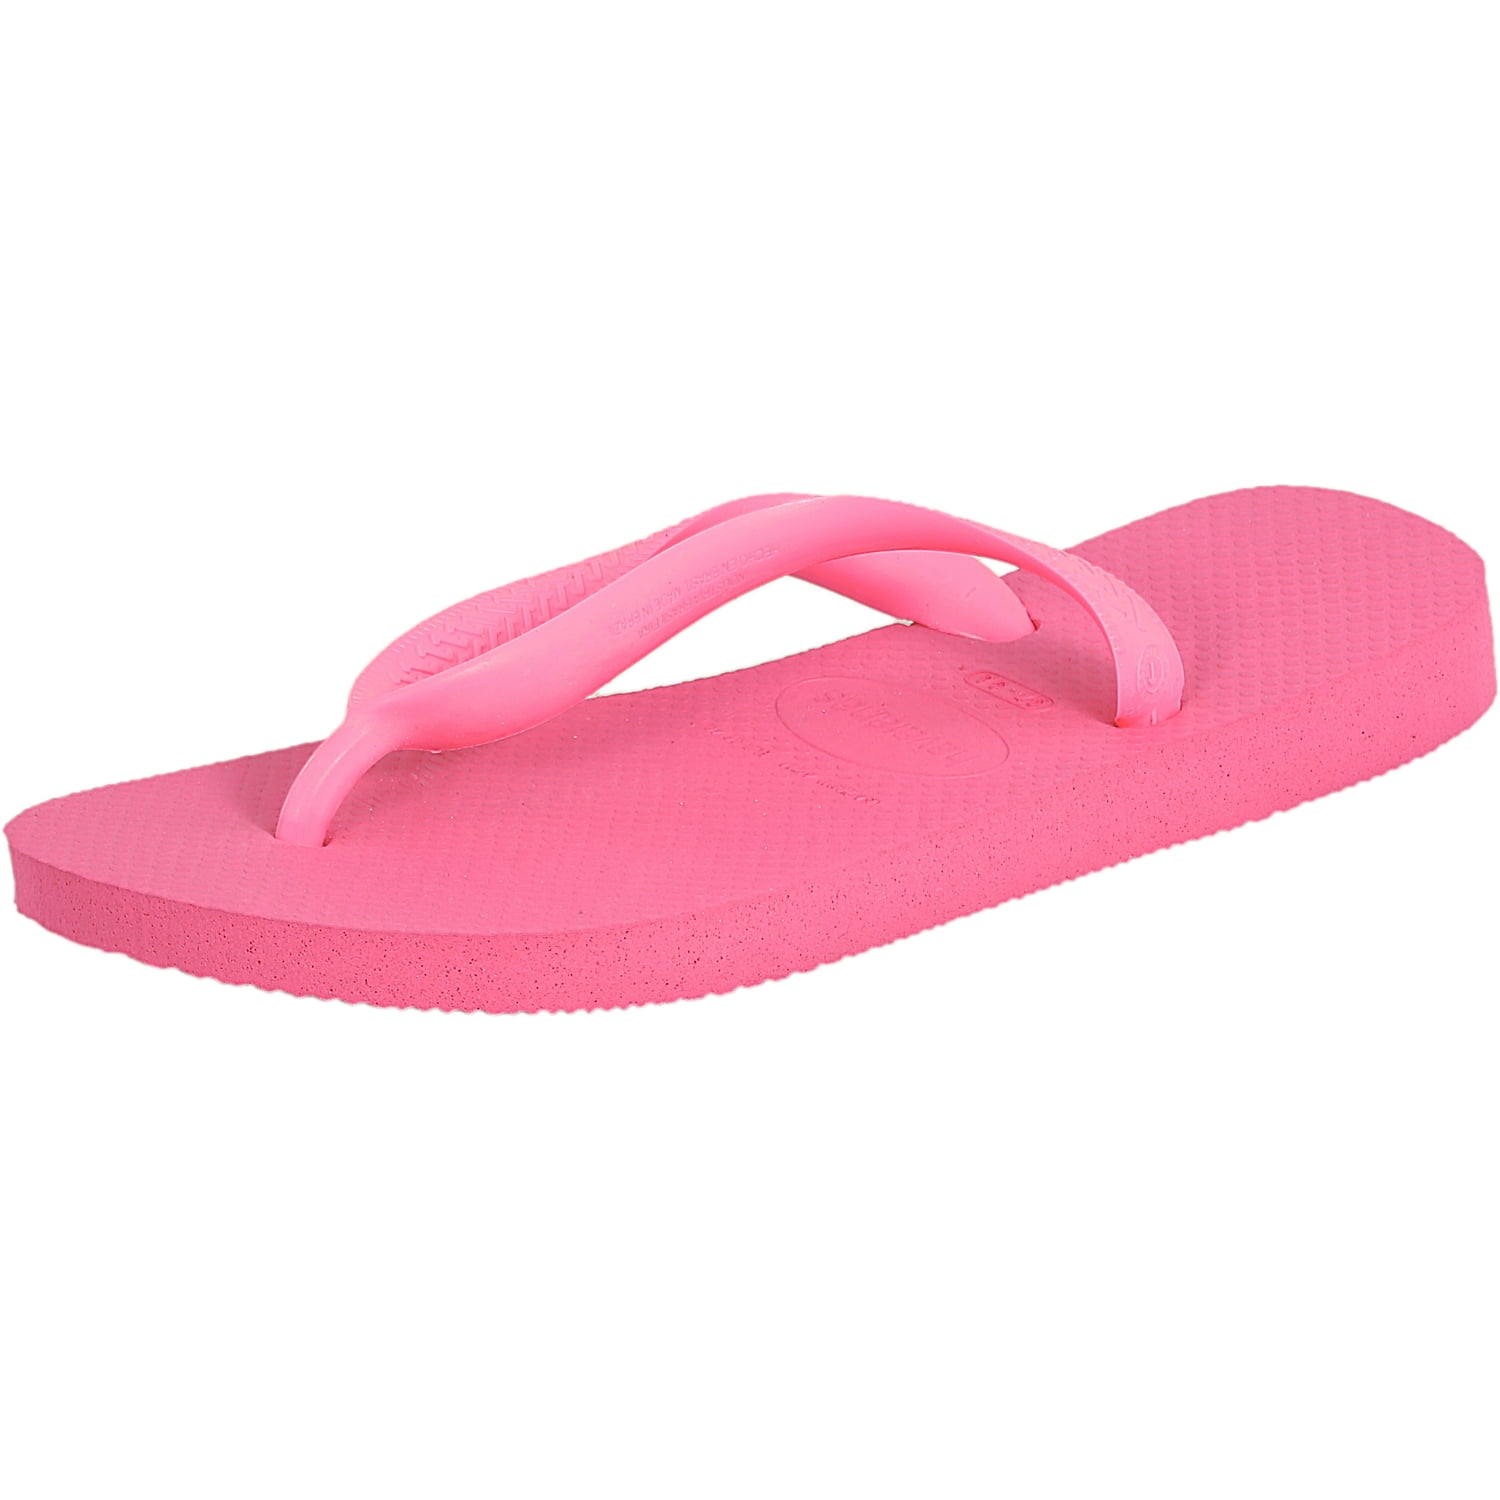 Havaianas H. Top Shocking Pink Sandal - 10M / 9M - Walmart.com